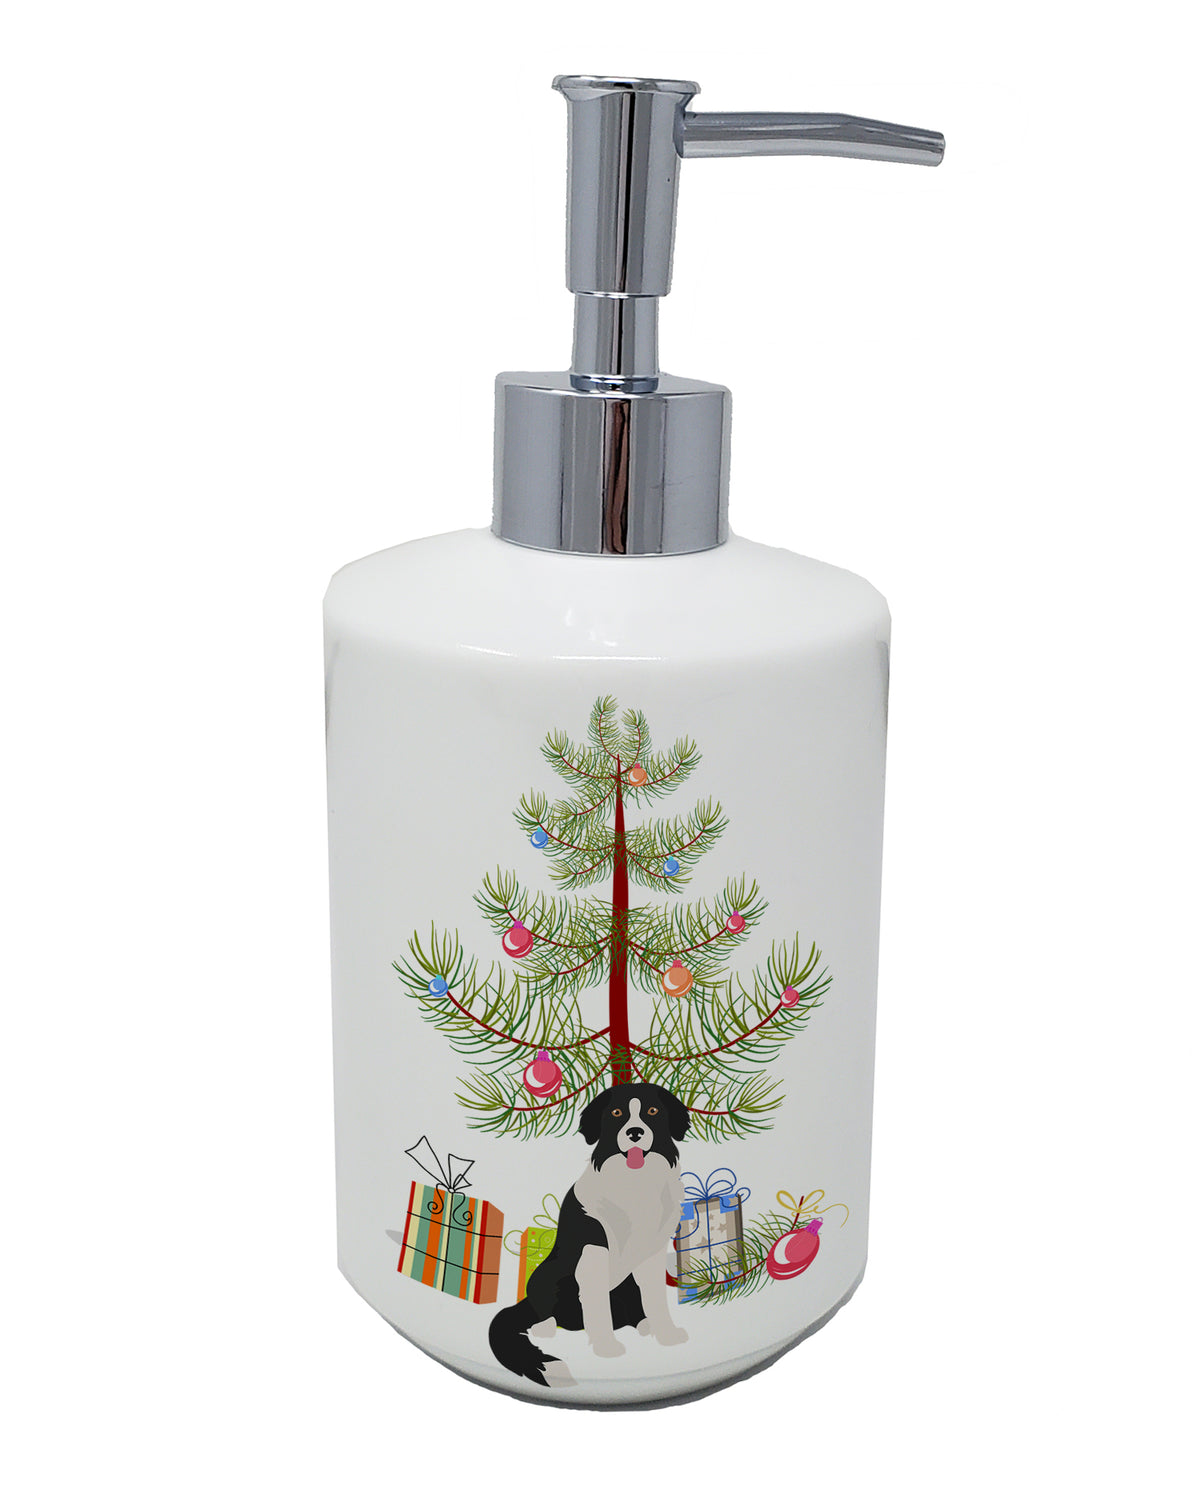 Buy this Borador Christmas Tree Ceramic Soap Dispenser